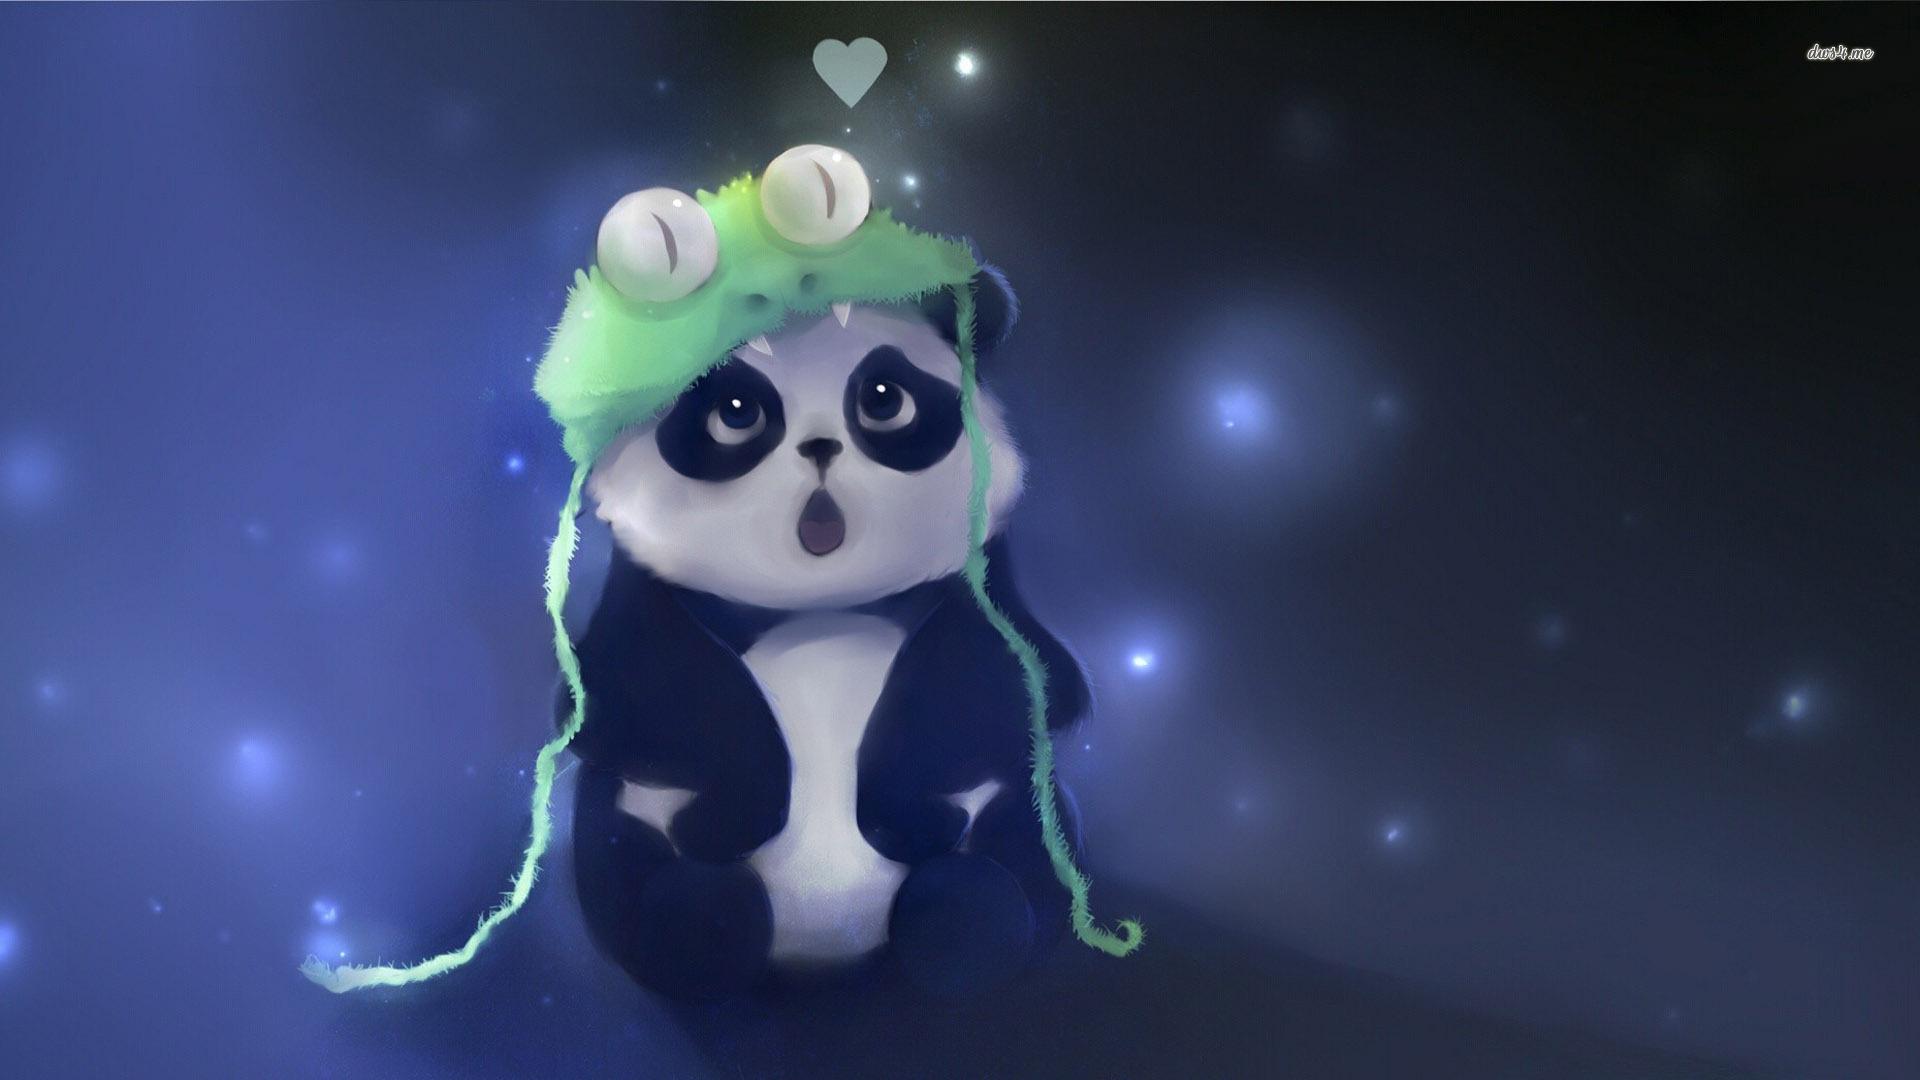 Cute Baby Panda wallpaperx1080